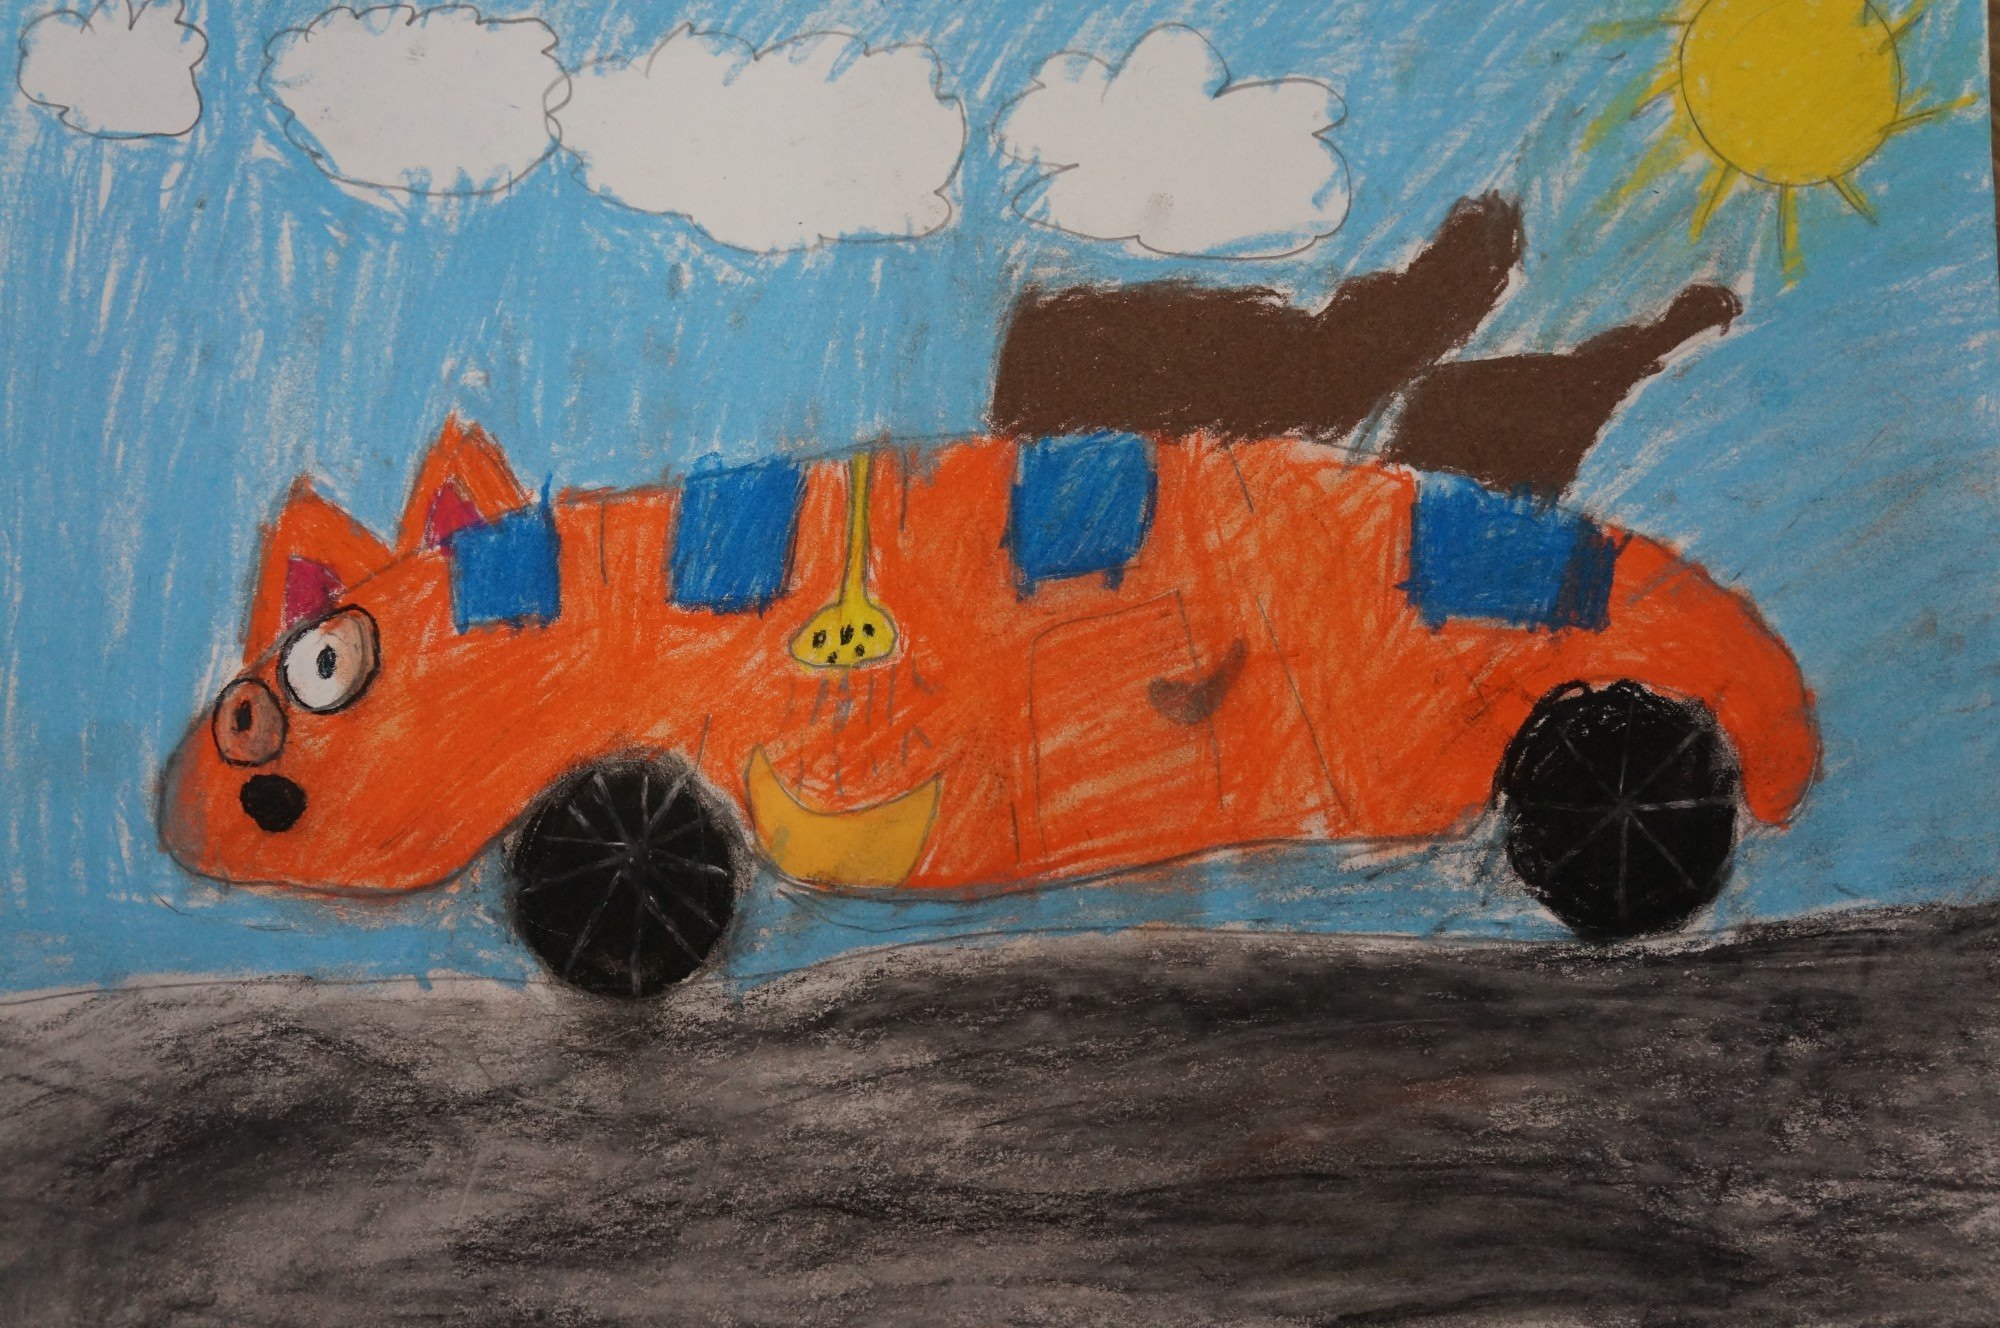 Рисунок машины 3 класса